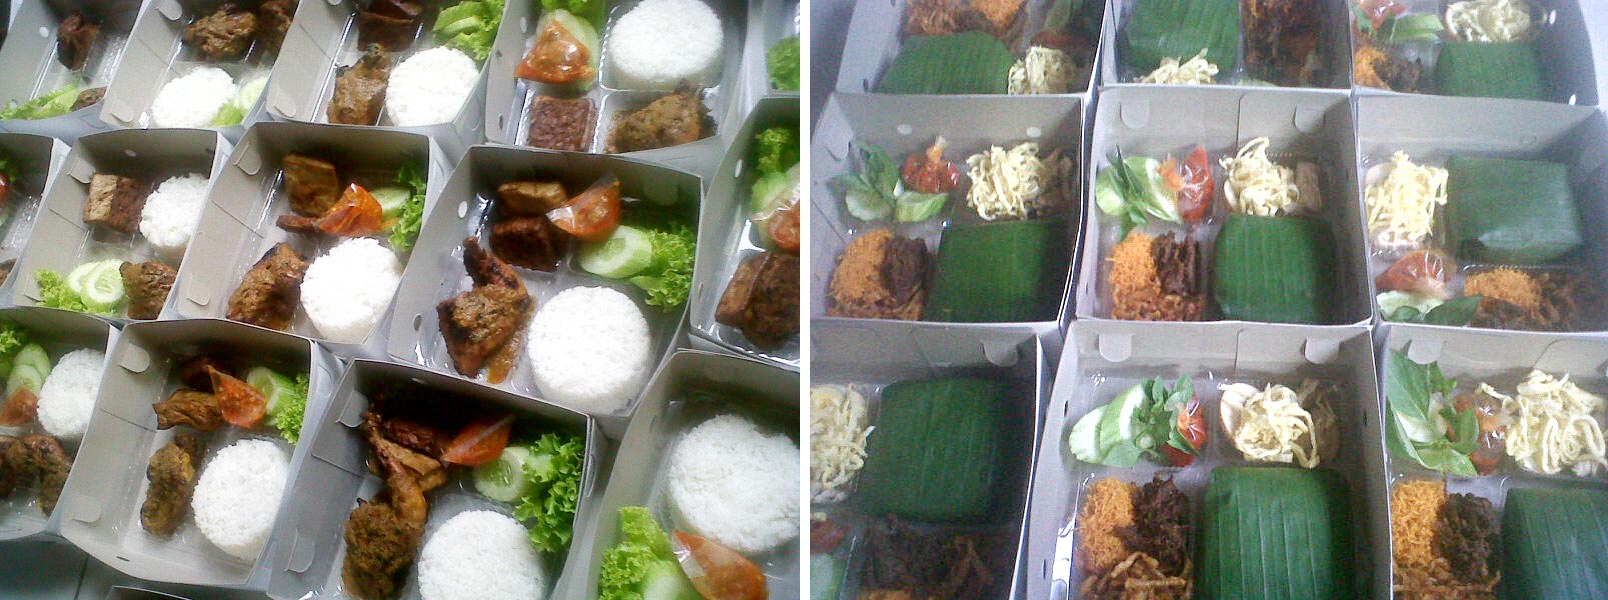 Murah Di Jakarta Melayani Catering Harian Anak Kost Nasi Kotak Box